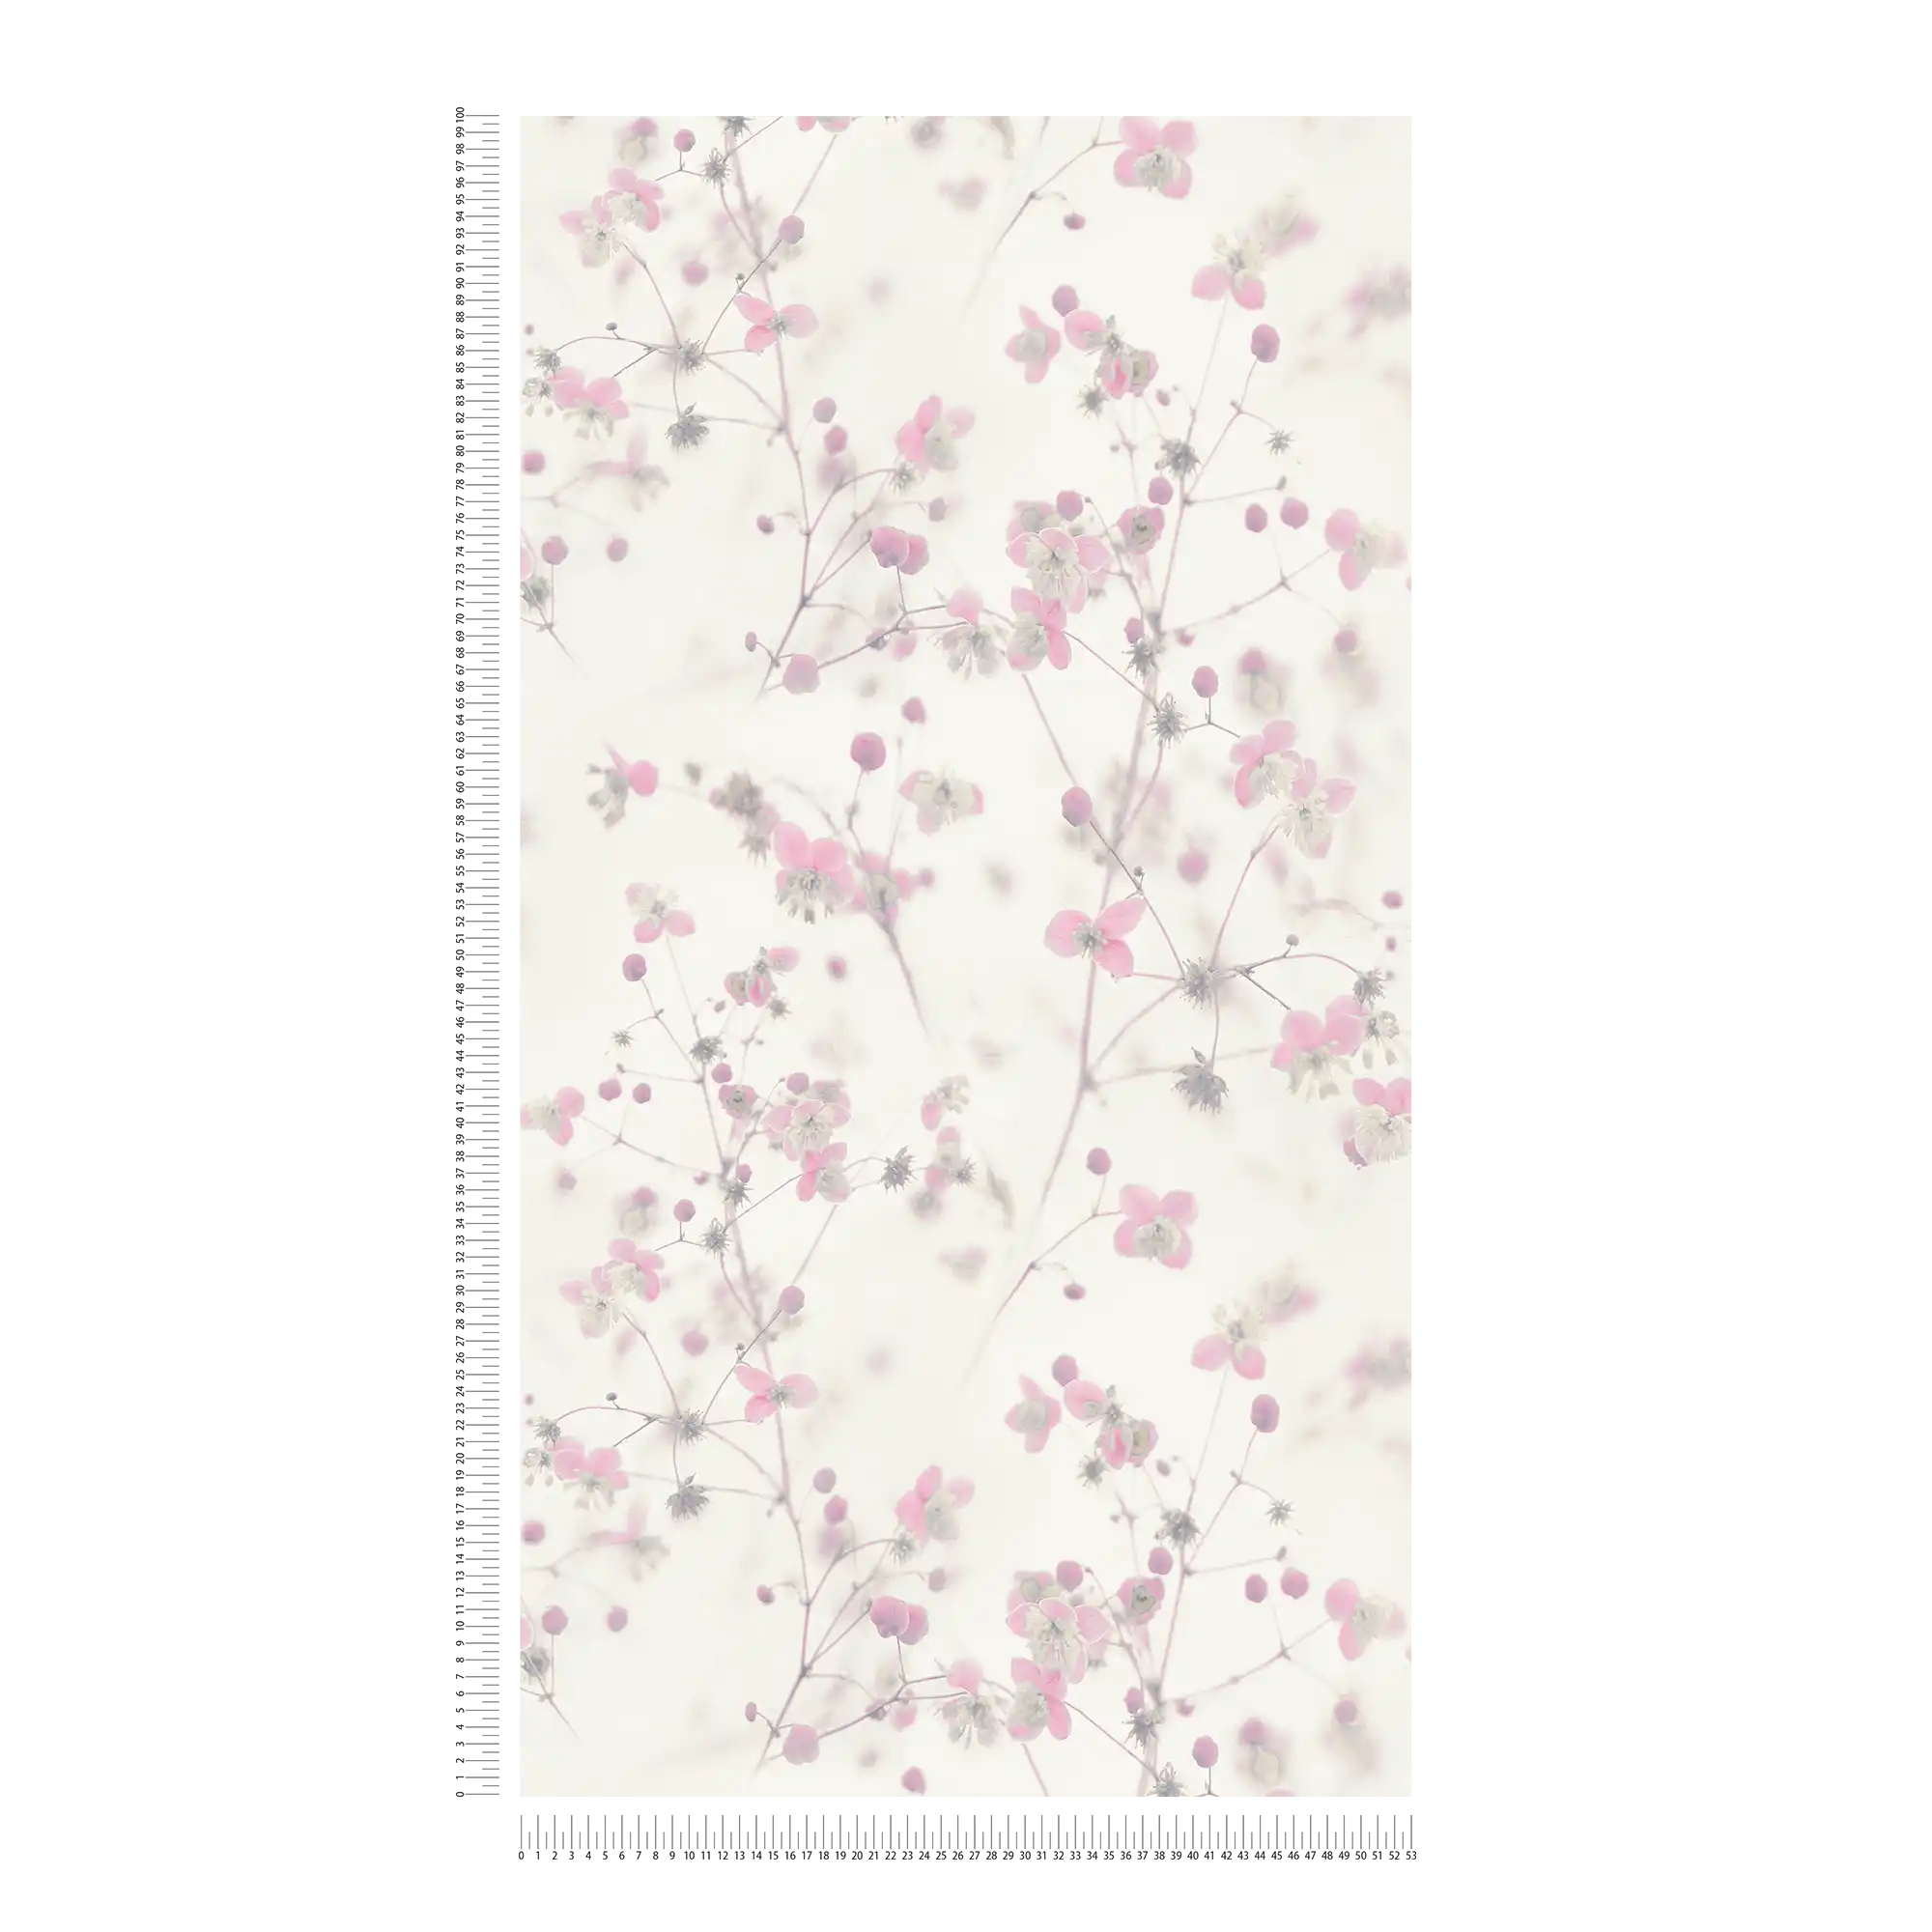             Moderne Landhaus Tapete Blumenmuster – Grau, Rosa
        